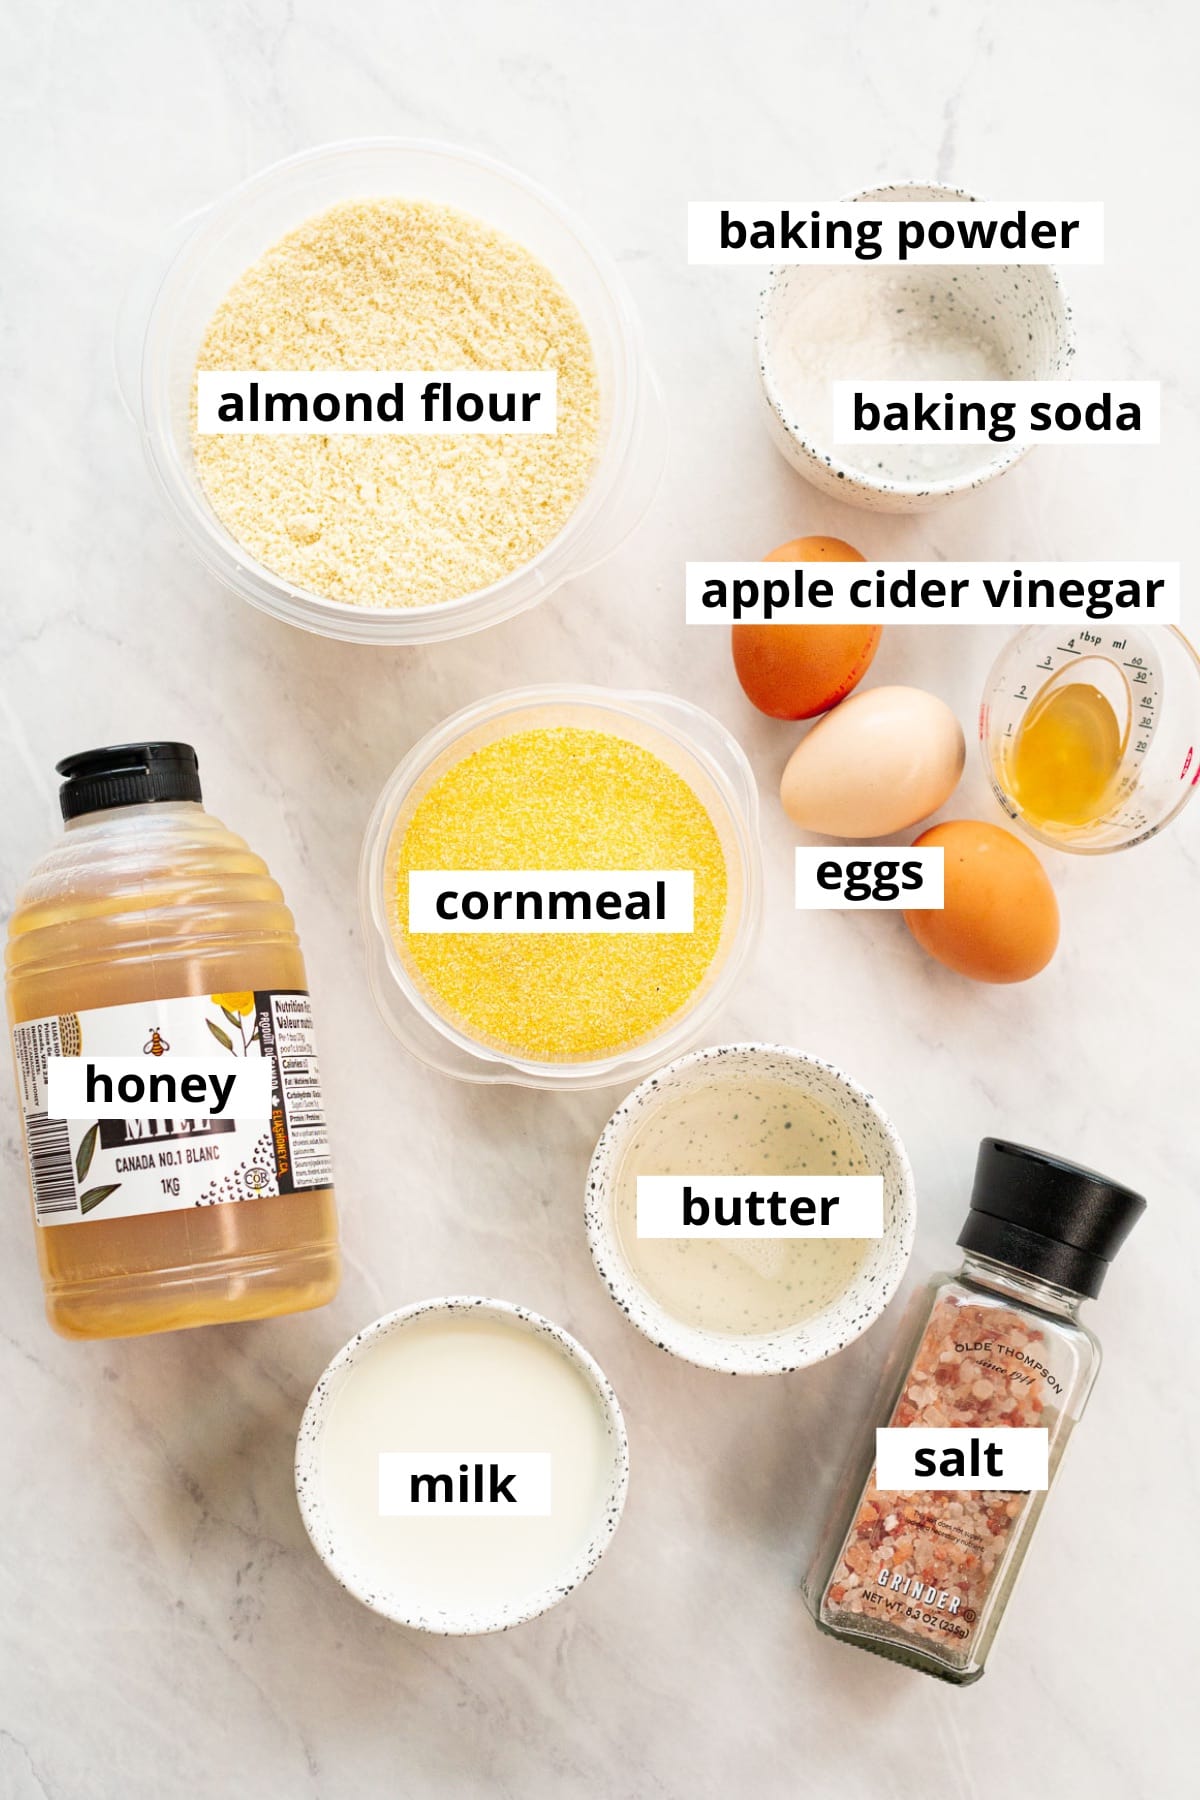 Almond flour, cornmeal, eggs, apple cider vinegar, baking powder, baking soda, honey, butter, milk, salt.